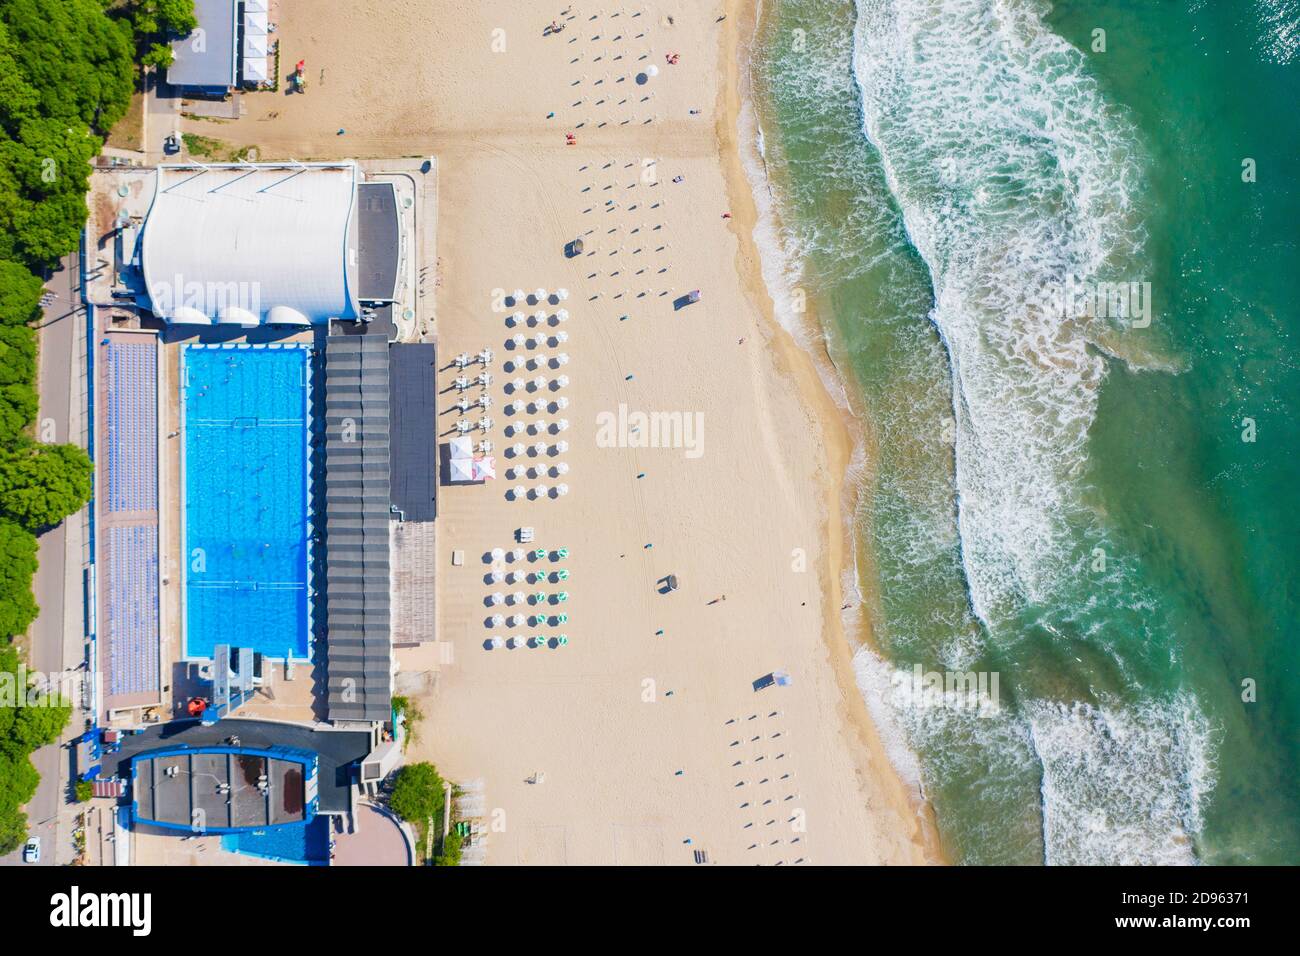 Europe, Bulgarie, Varna, vue aérienne de la piscine côté plage Banque D'Images